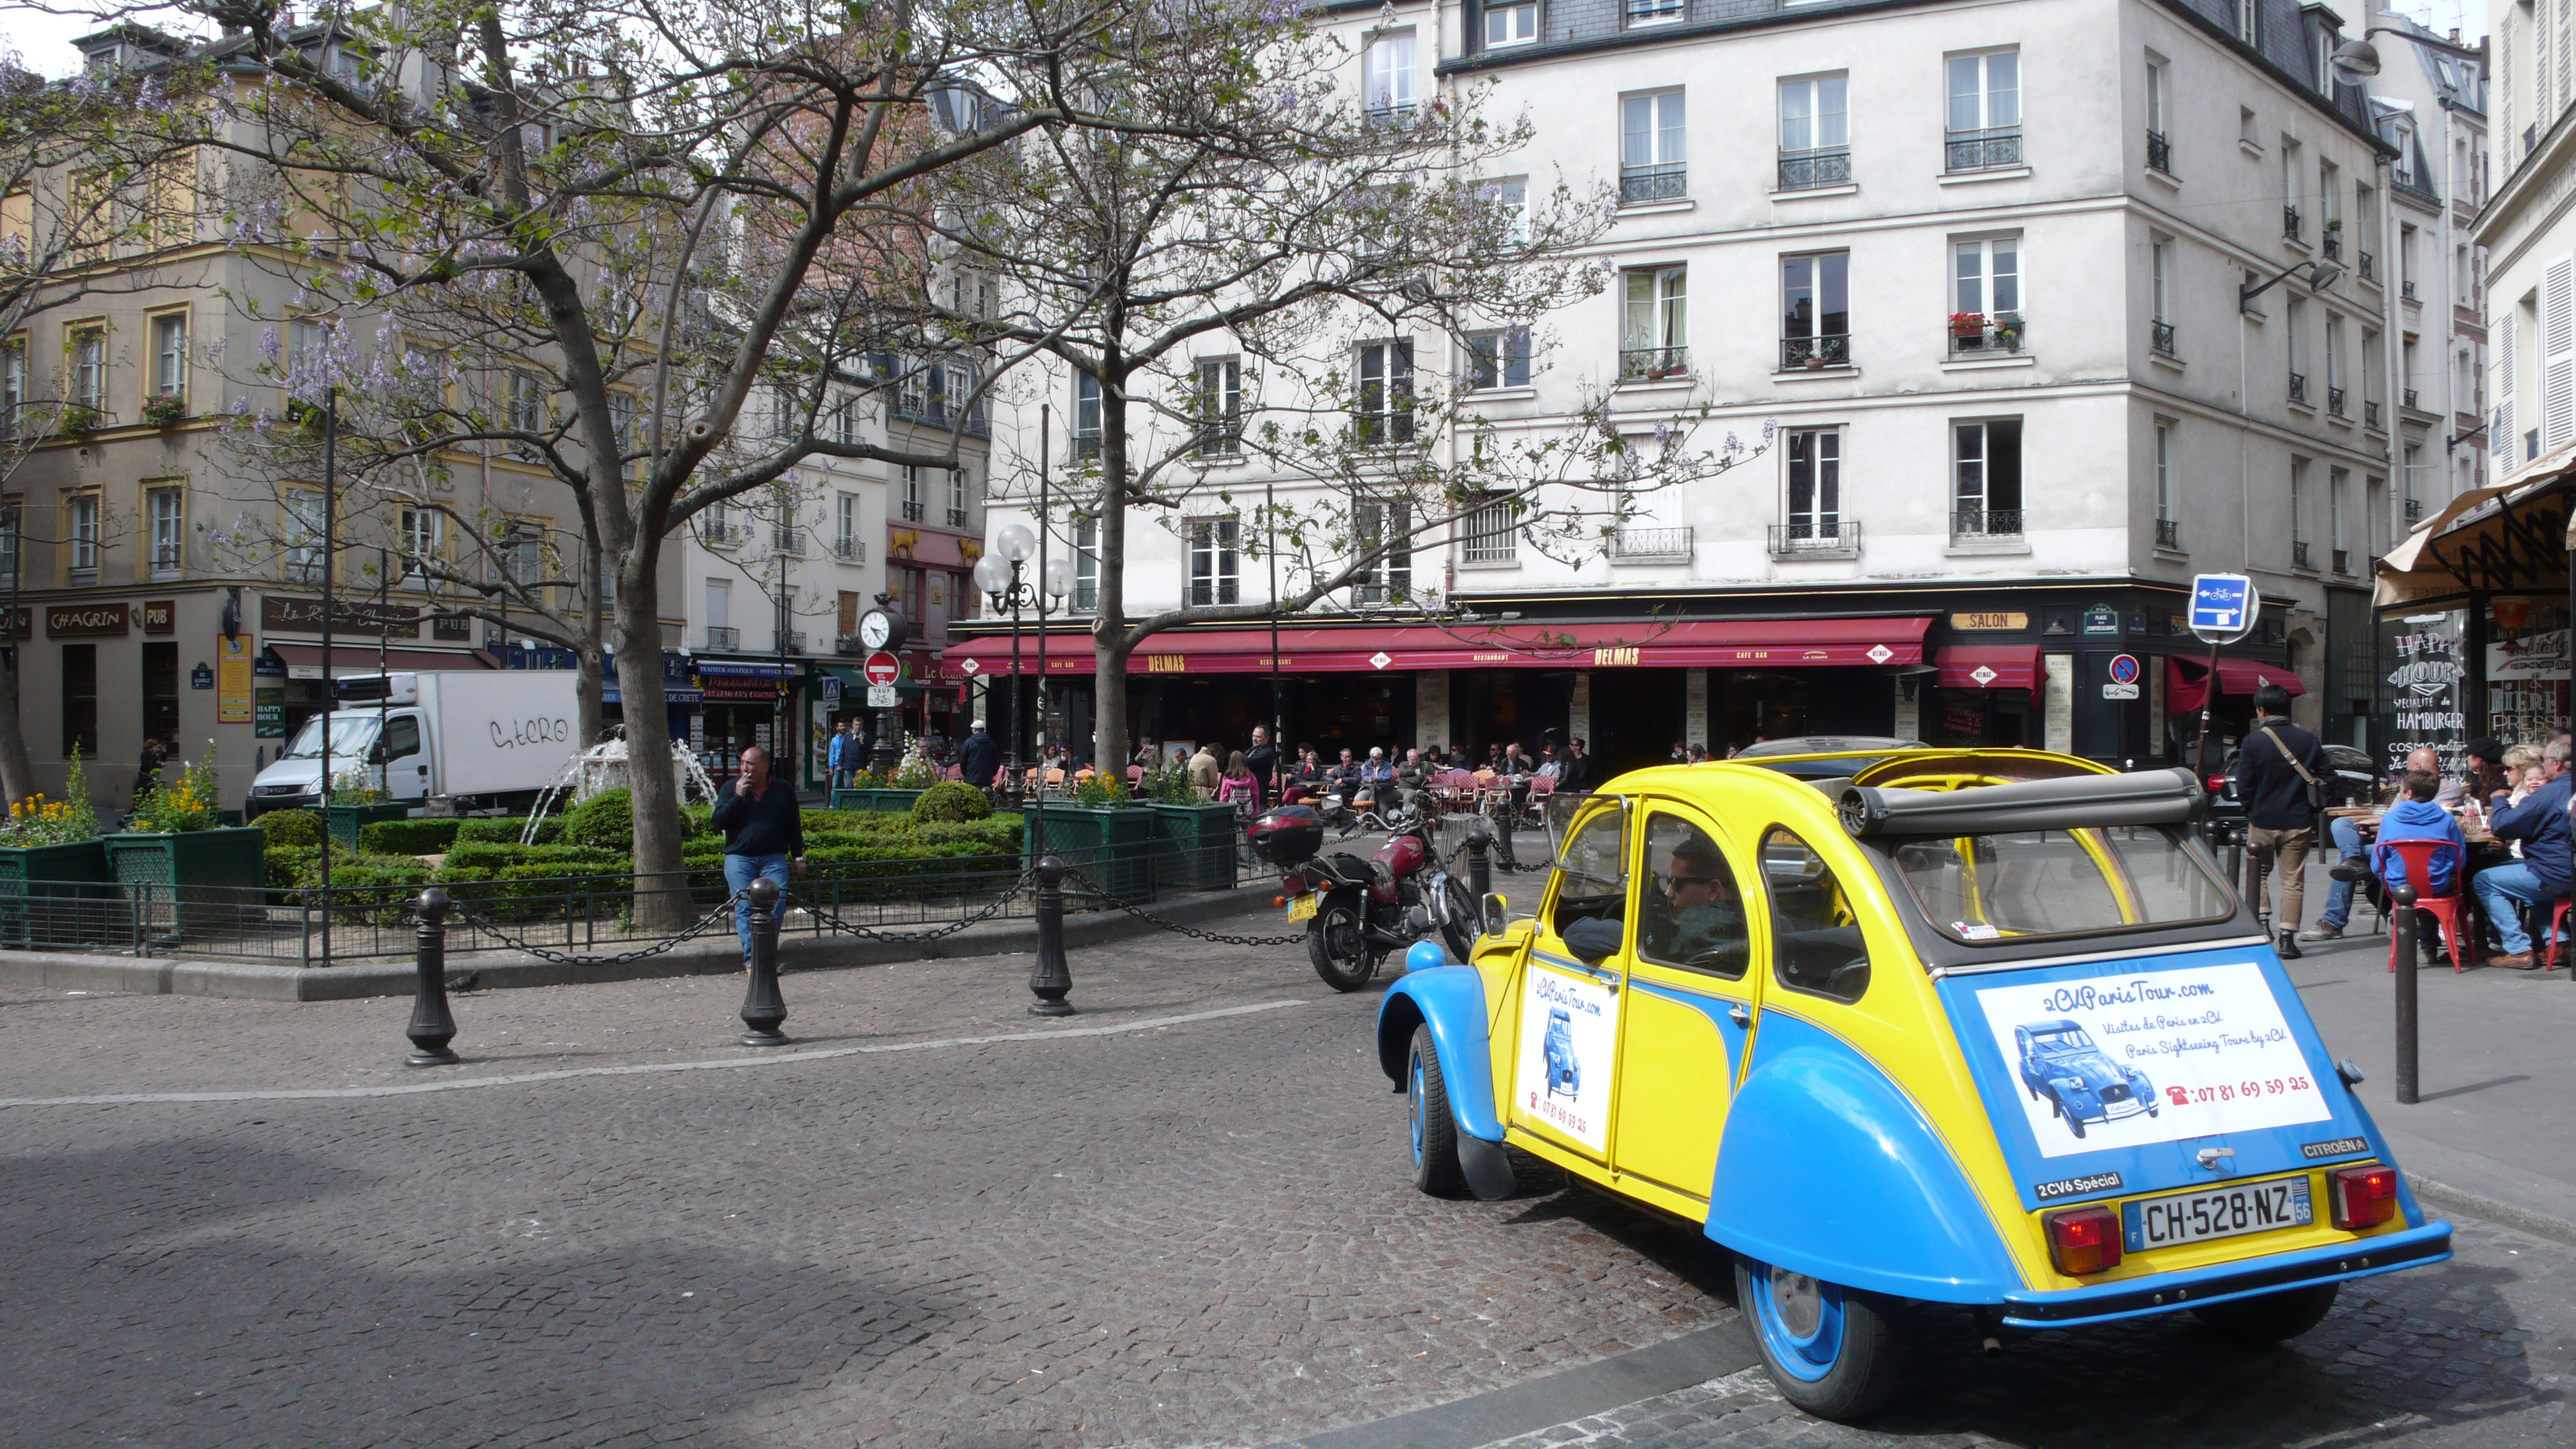 2CV Paris Tour - Visit Paris by 2CV! Place de la Contrescarpe